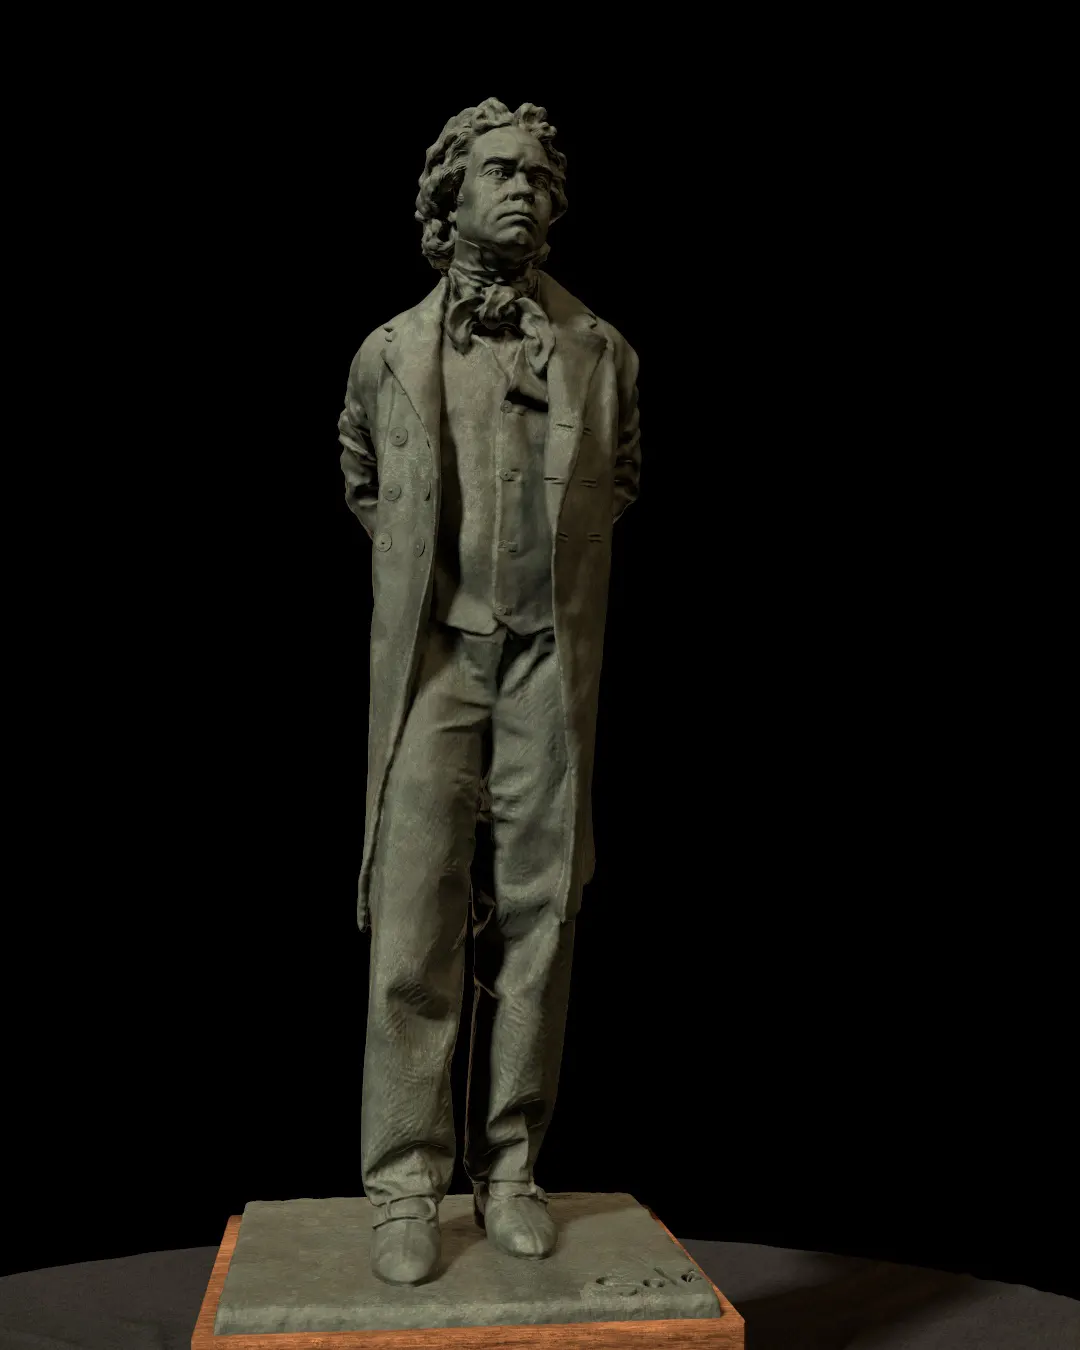 Ludwig-van-Beethoven-statue/Rendering-of-Ludwig-van-Beethoven-statue-modeled-by-Emil-Sole-7.webp